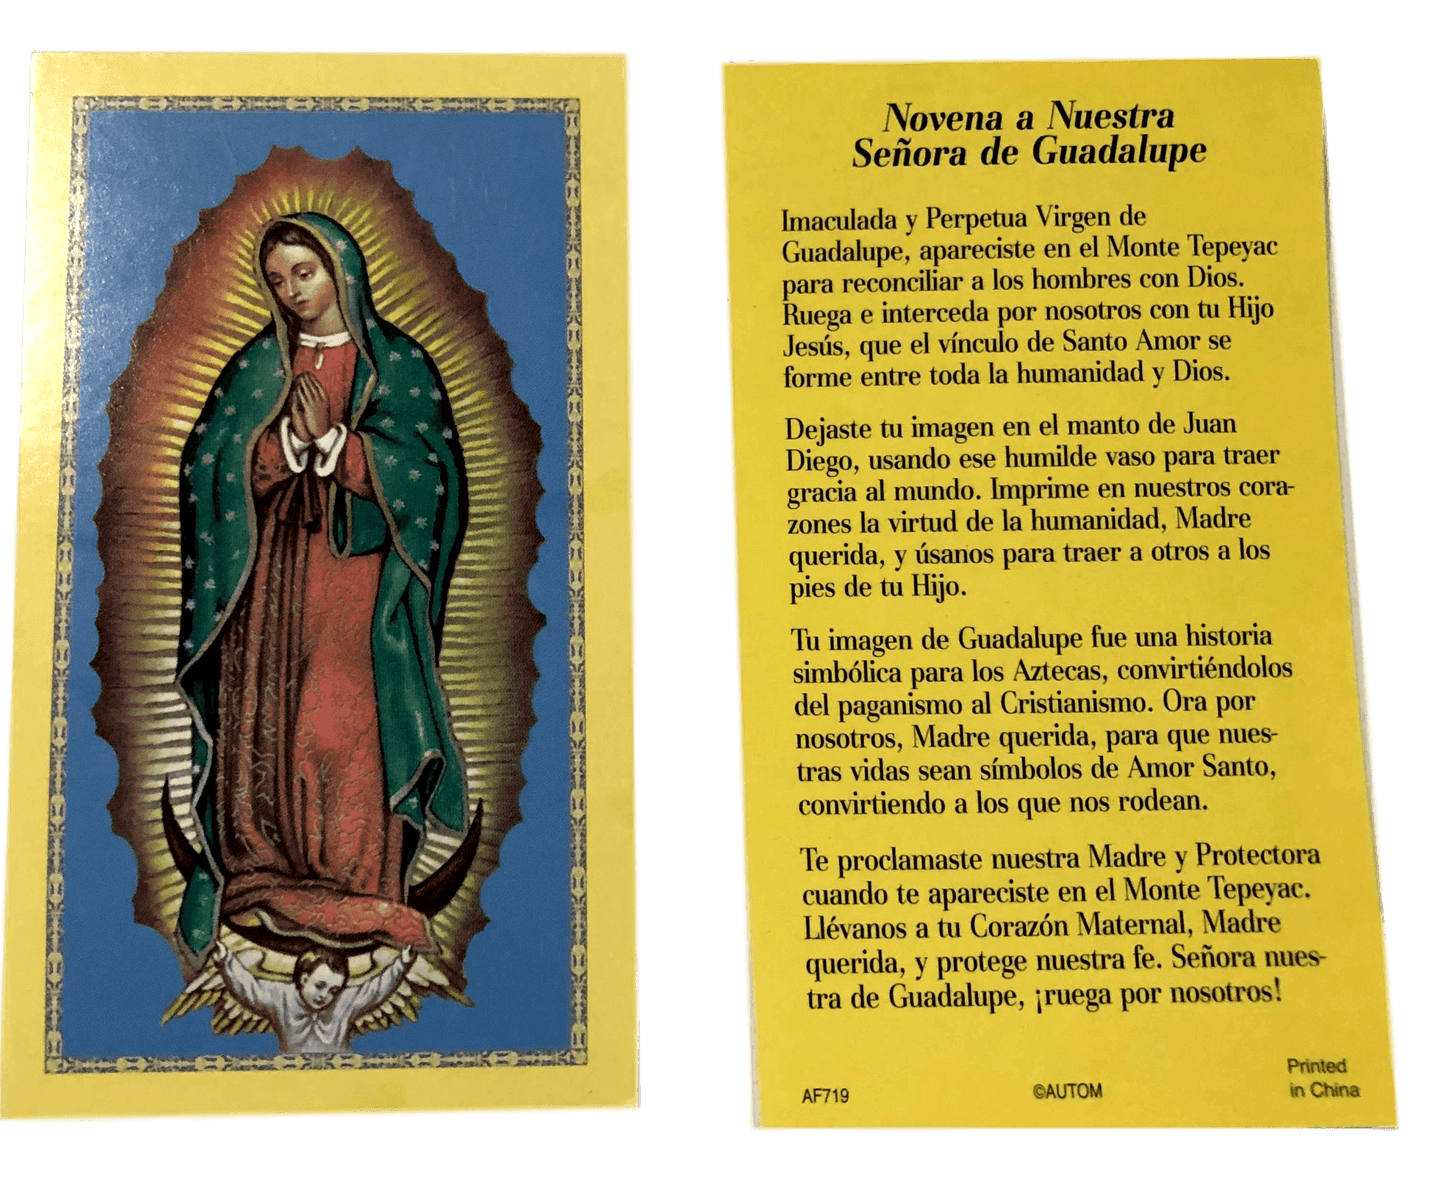 Prayer Card Novena A Nuestra Senora De Guadalupe SPANISH No Laminated AF719 - Ysleta Mission Gift Shop- VOTED El Paso's Best Gift Shop